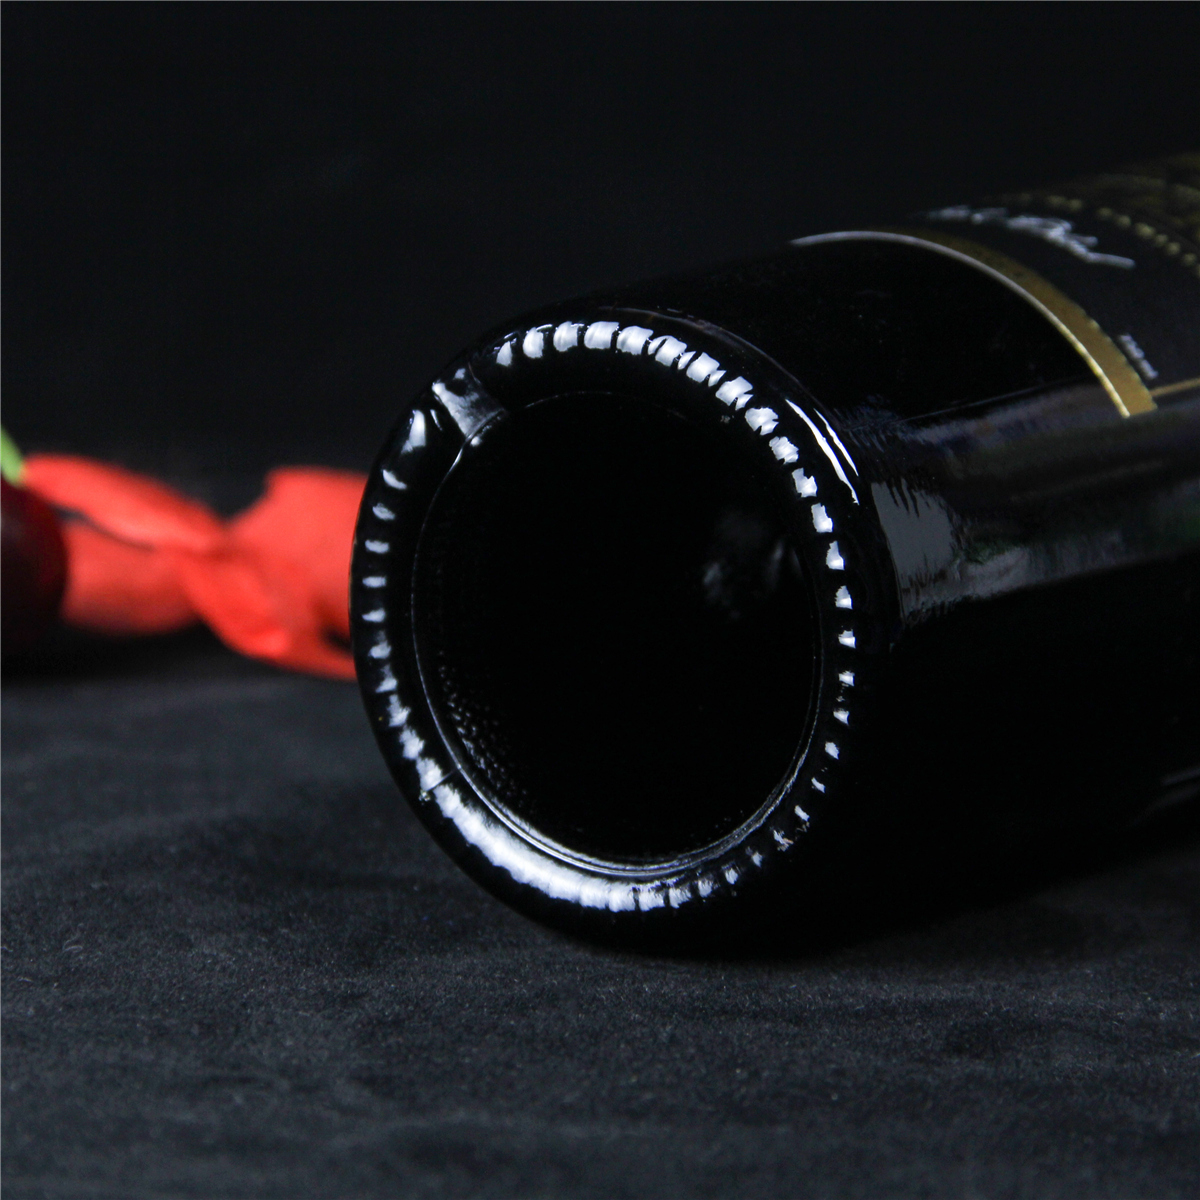 智利邁坡谷騎士維卡羅家族珍藏干紅葡萄酒紅酒